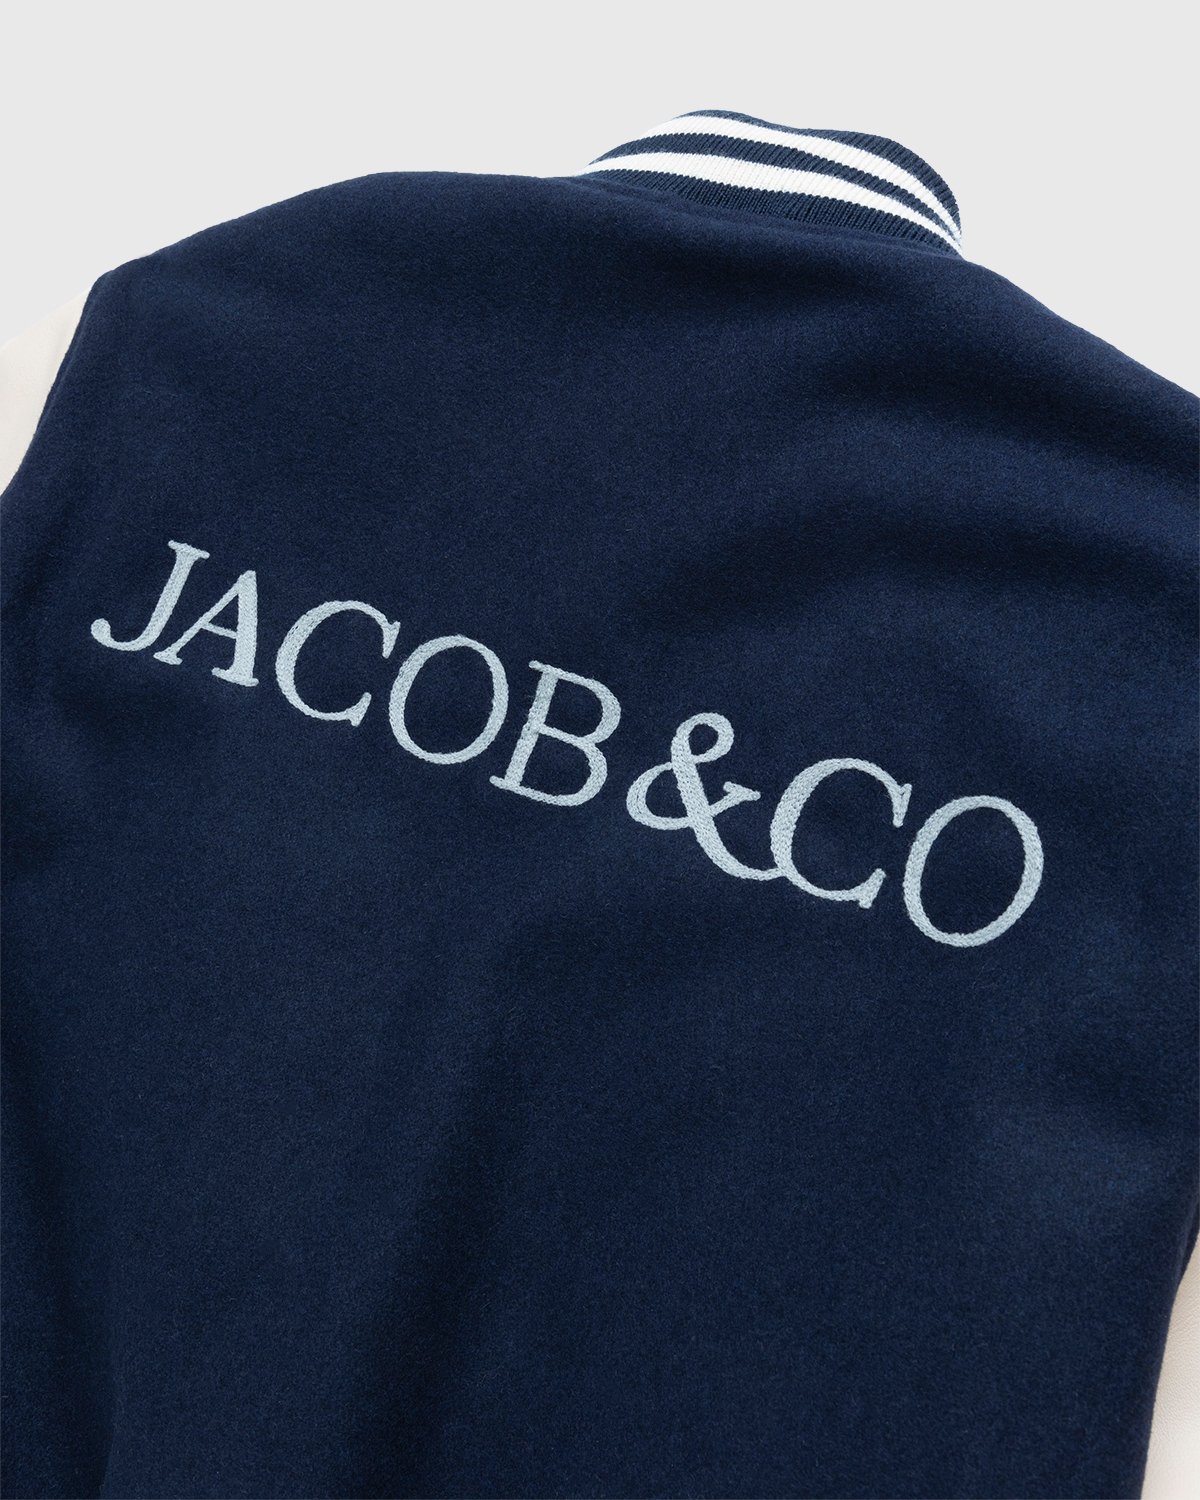 Jacob & Co. x Highsnobiety - Logo Varsity Jacket Navy Creme - Clothing - Blue - Image 6